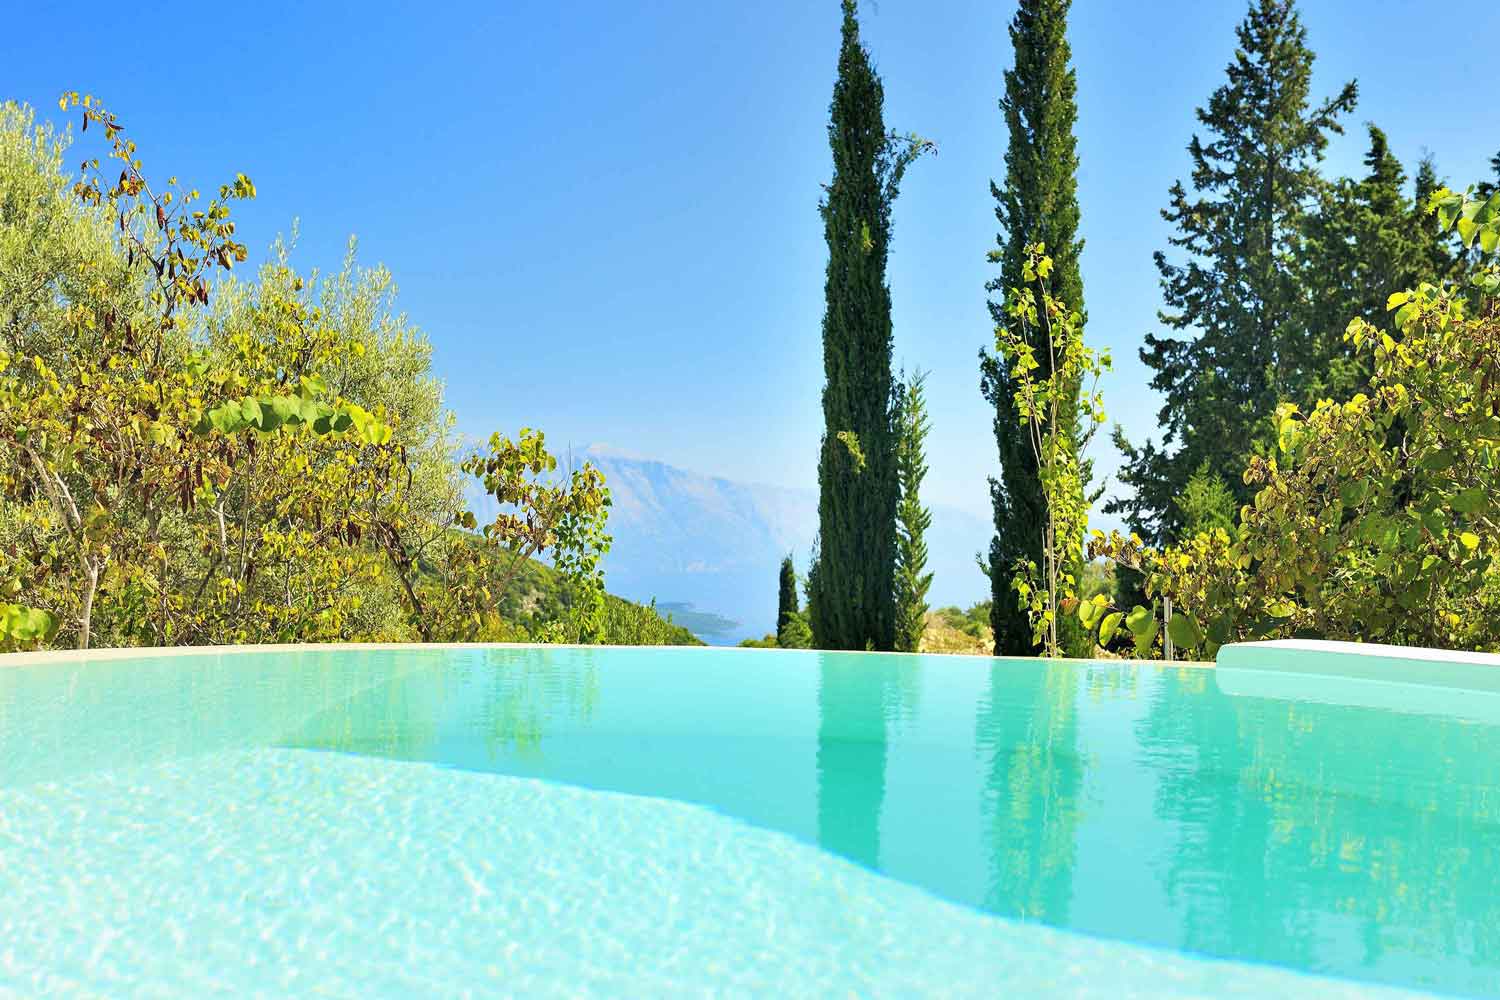 βίλα με ιδιωτική πισίνα για πολυτελείς διακοπές, καταπληκτική θέα από την πισίνα